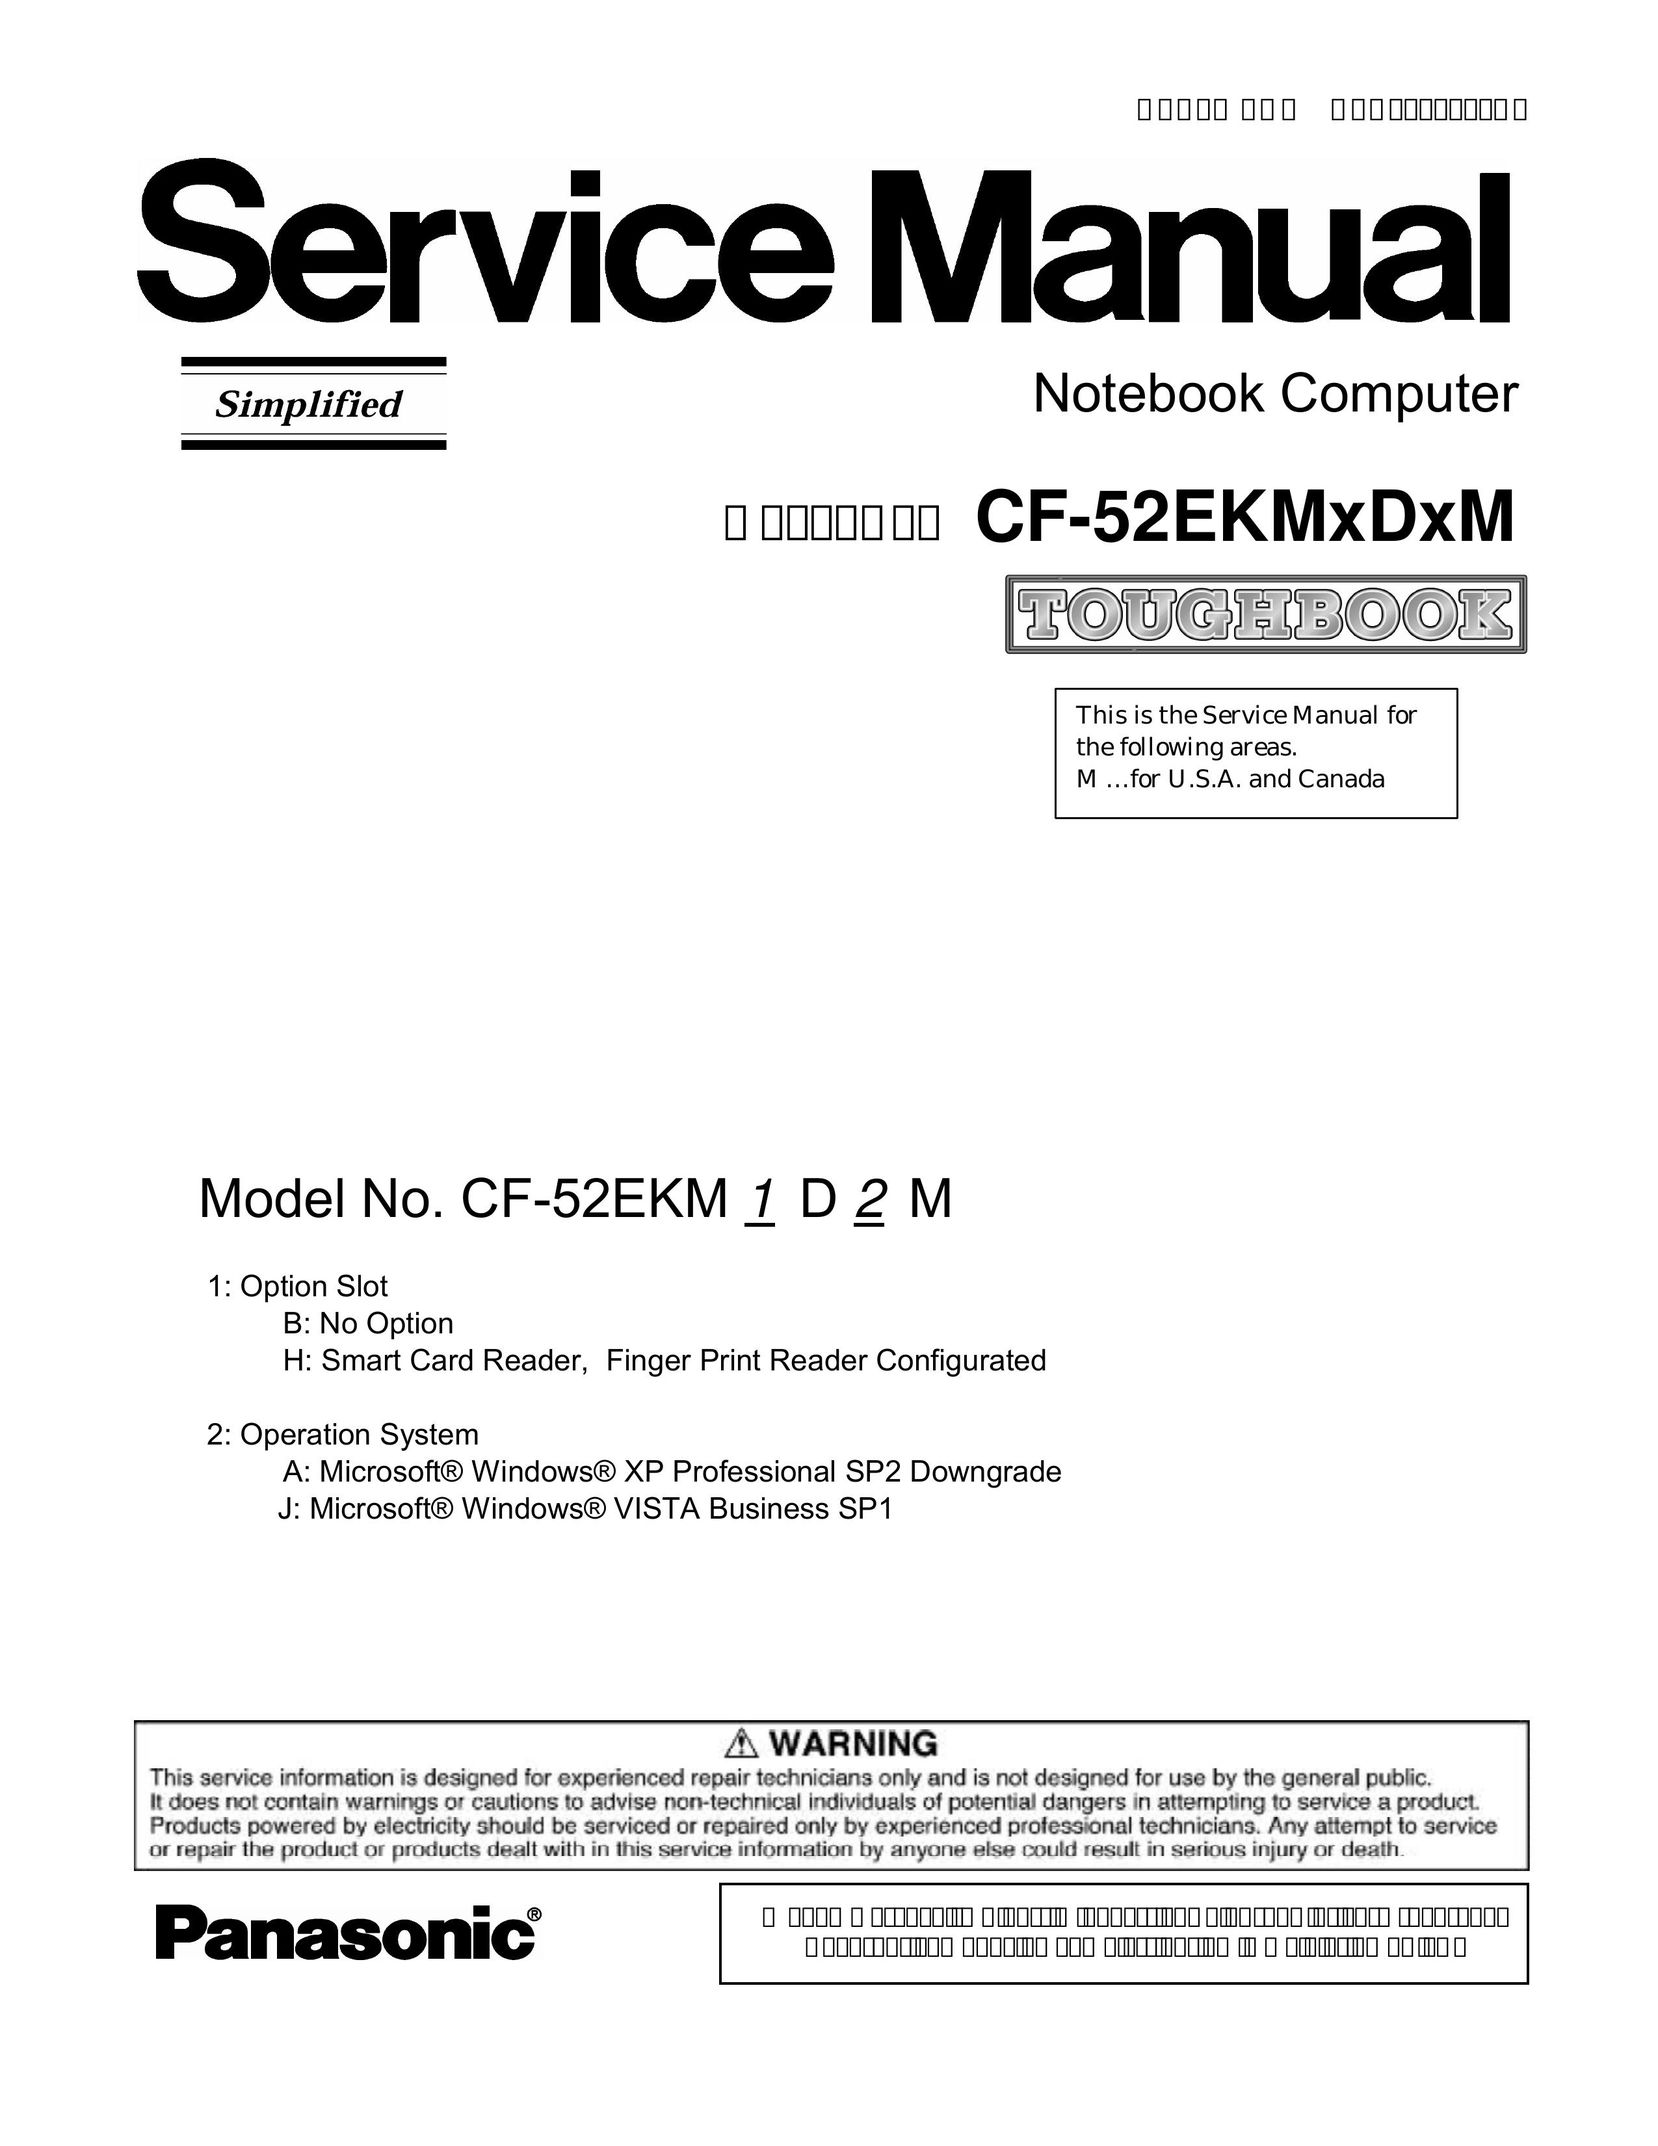 Panasonic CF-52EKM 1 D 2 M Laptop User Manual